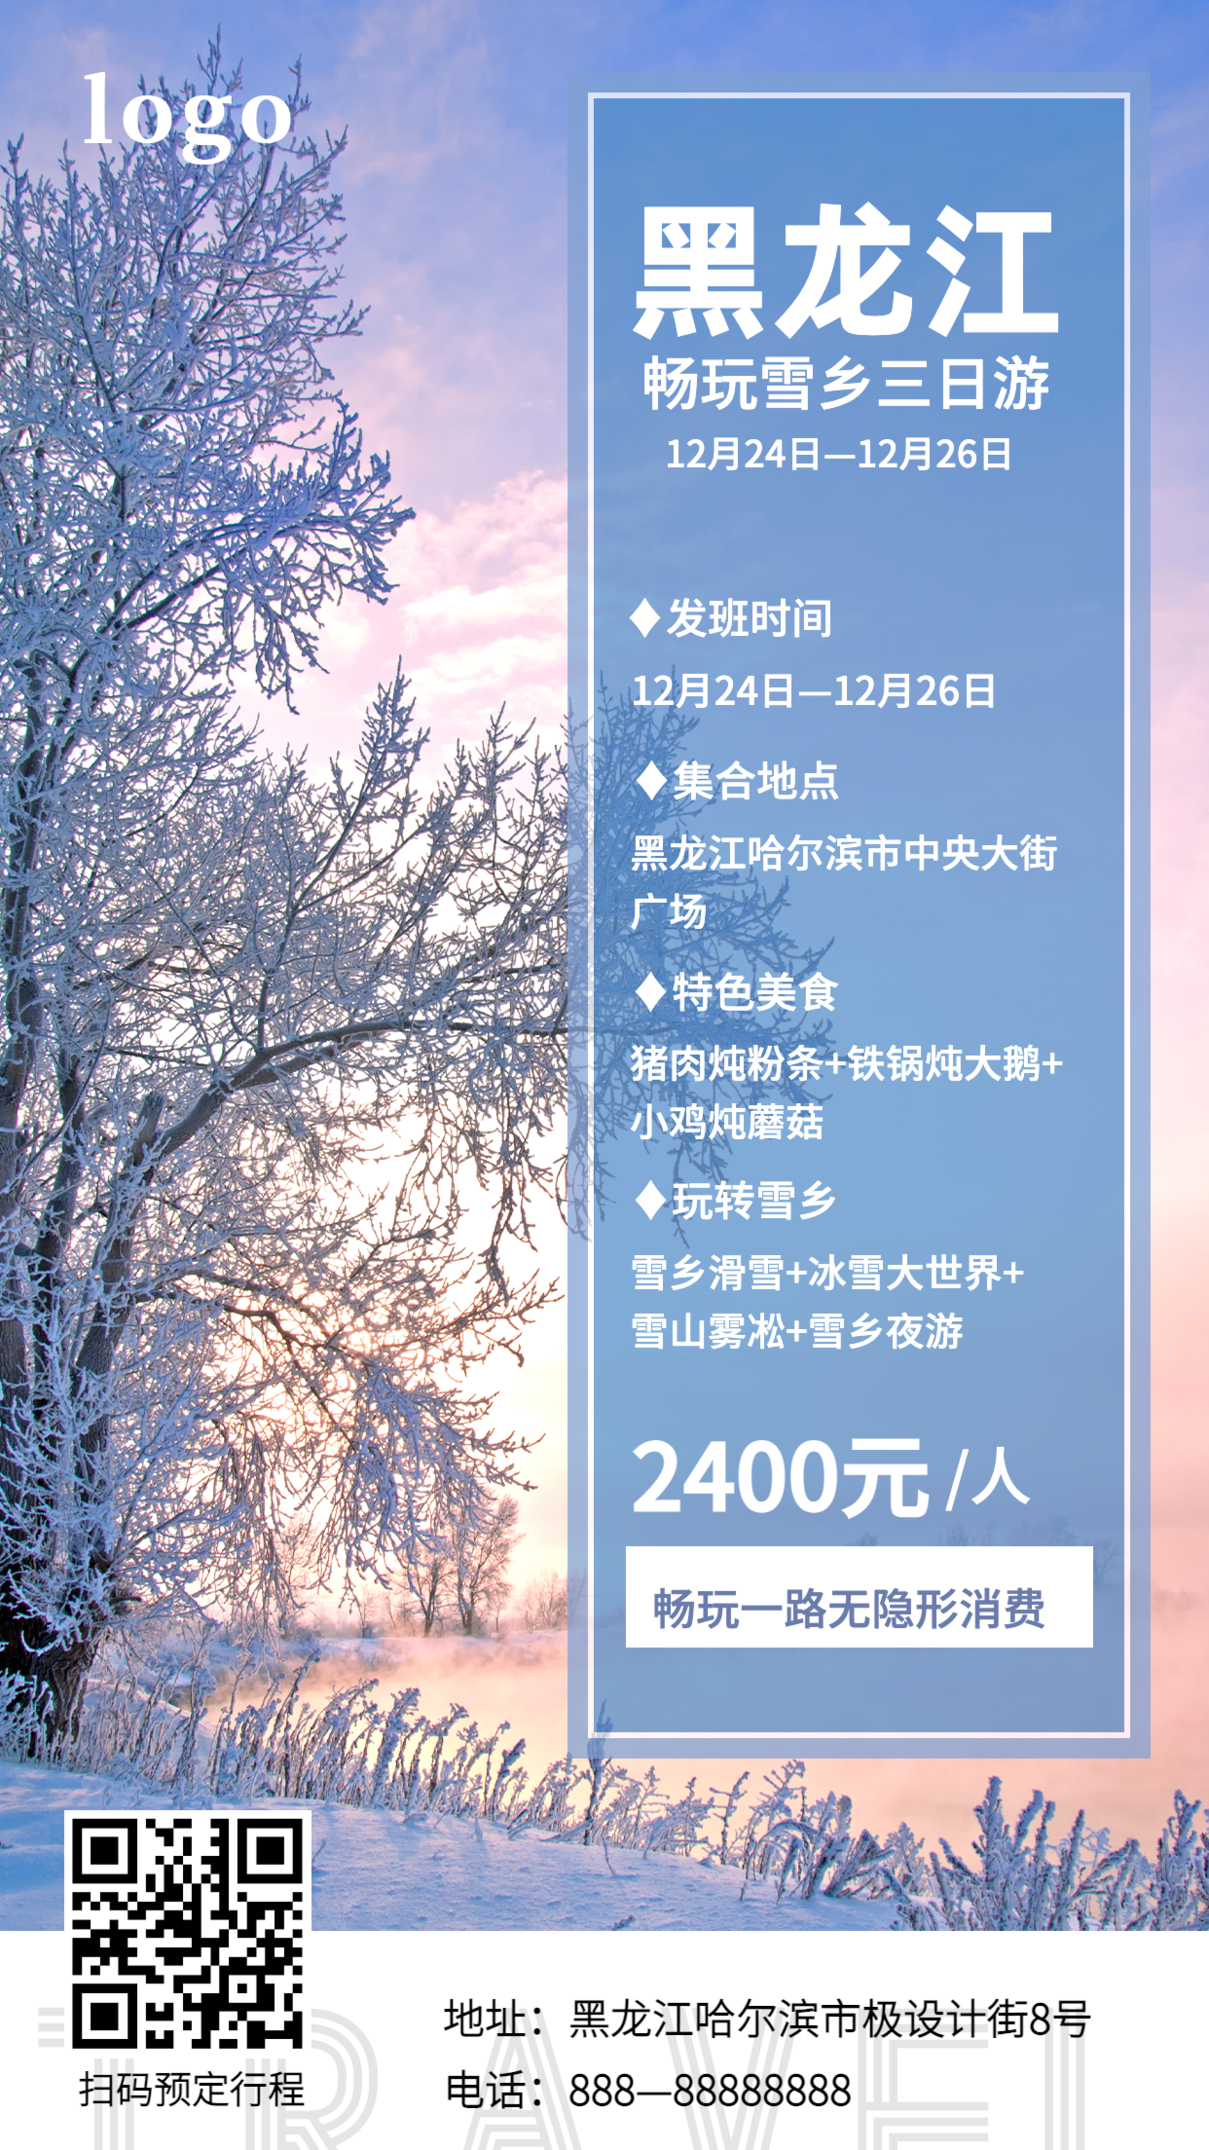 黑龙江旅游雪景三日游海报